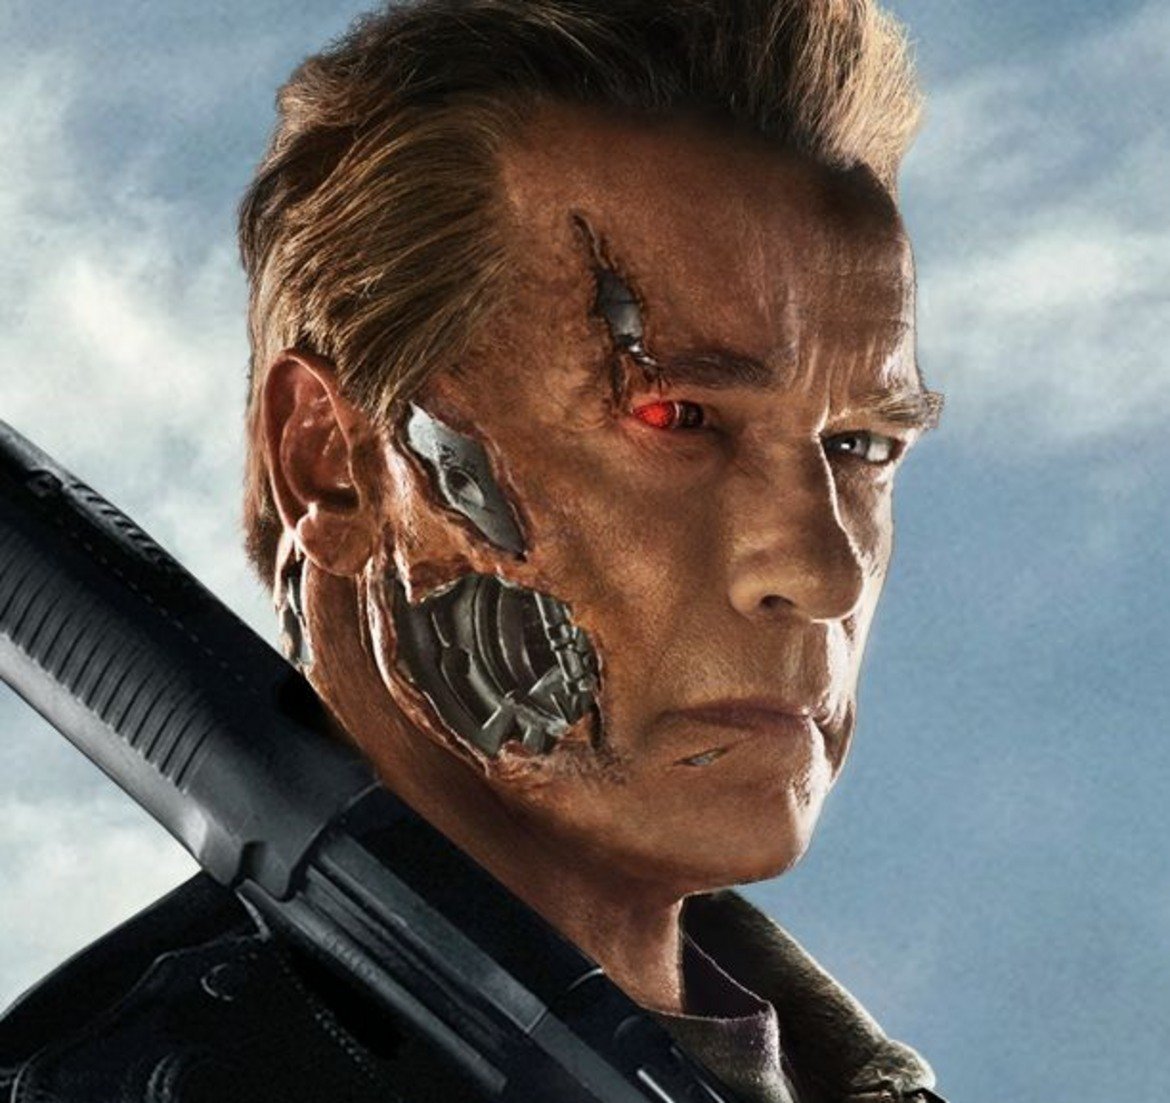 1. Нов "Terminator" (6, ама не съвсем) - "Терминатор 2: Денят на Страшния съд" е един от най-великите екшън филми, създавани някога. За съжаление, след него нещата тръгнаха надолу. Последваха 3 филма, нито един от които не успя да достигне нивото на шедьовъра на Джеймс Камерън. Поредицата постоянно се опитваше да направи своето грандиозно завръщане, но винаги оставяше феновете раздвоени и разочаровани. Време е за нов опит, като този път Камерън се завръща като продуцент. Режисьор ще е Тим Милър (Deadpool).

Историята на новия "Терминатор" ще е директно продължение на "Терминатор 2" и ще пренебрегне изцяло събитията от гореспоменатите неуспешни продължения. Това, което се знае, е, че Арнолд Шварценегер, макар и доста по-сбръчкан, пак ще бъде терминатор модел Т-800, а Линда Хамилтън ще изиграе отново ролята на Сара Конър - майката на предполагаемия спасител на човечеството. Носят се слухове и за това, че главният герой ще е от мексикански произход, но да не задълбаваме в такива неща. Снимките би трябвало да започнат това лято.